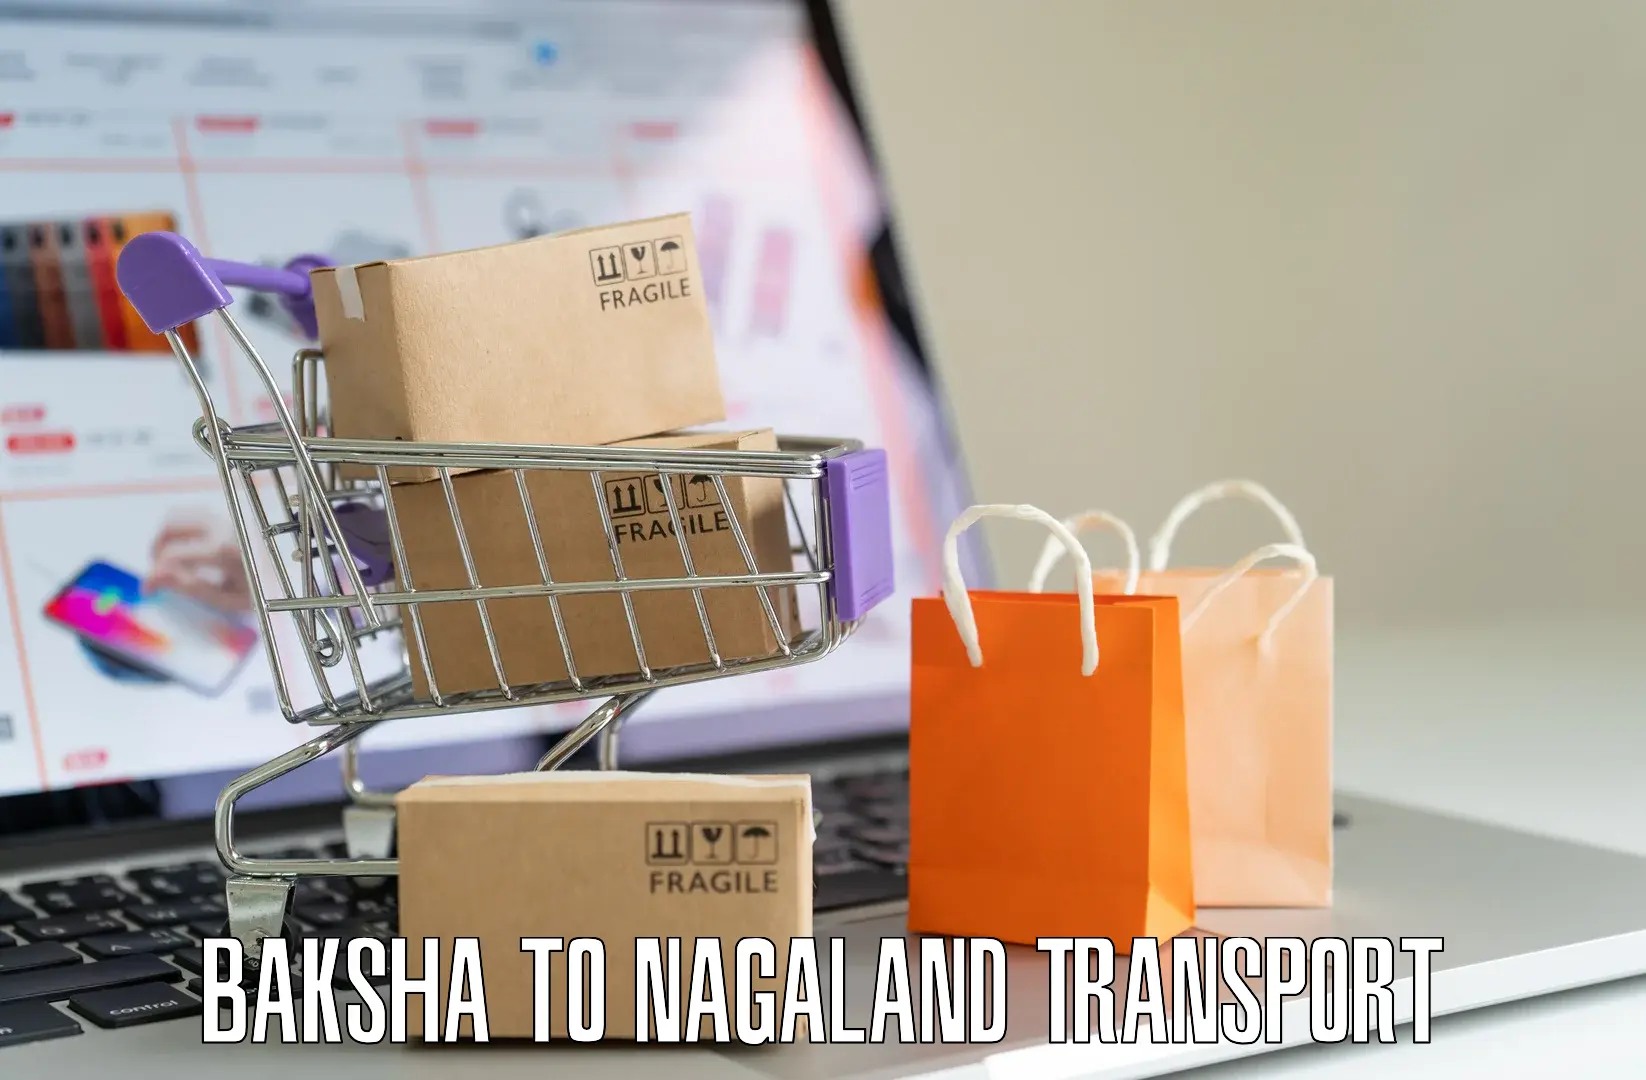 Furniture transport service Baksha to Nagaland